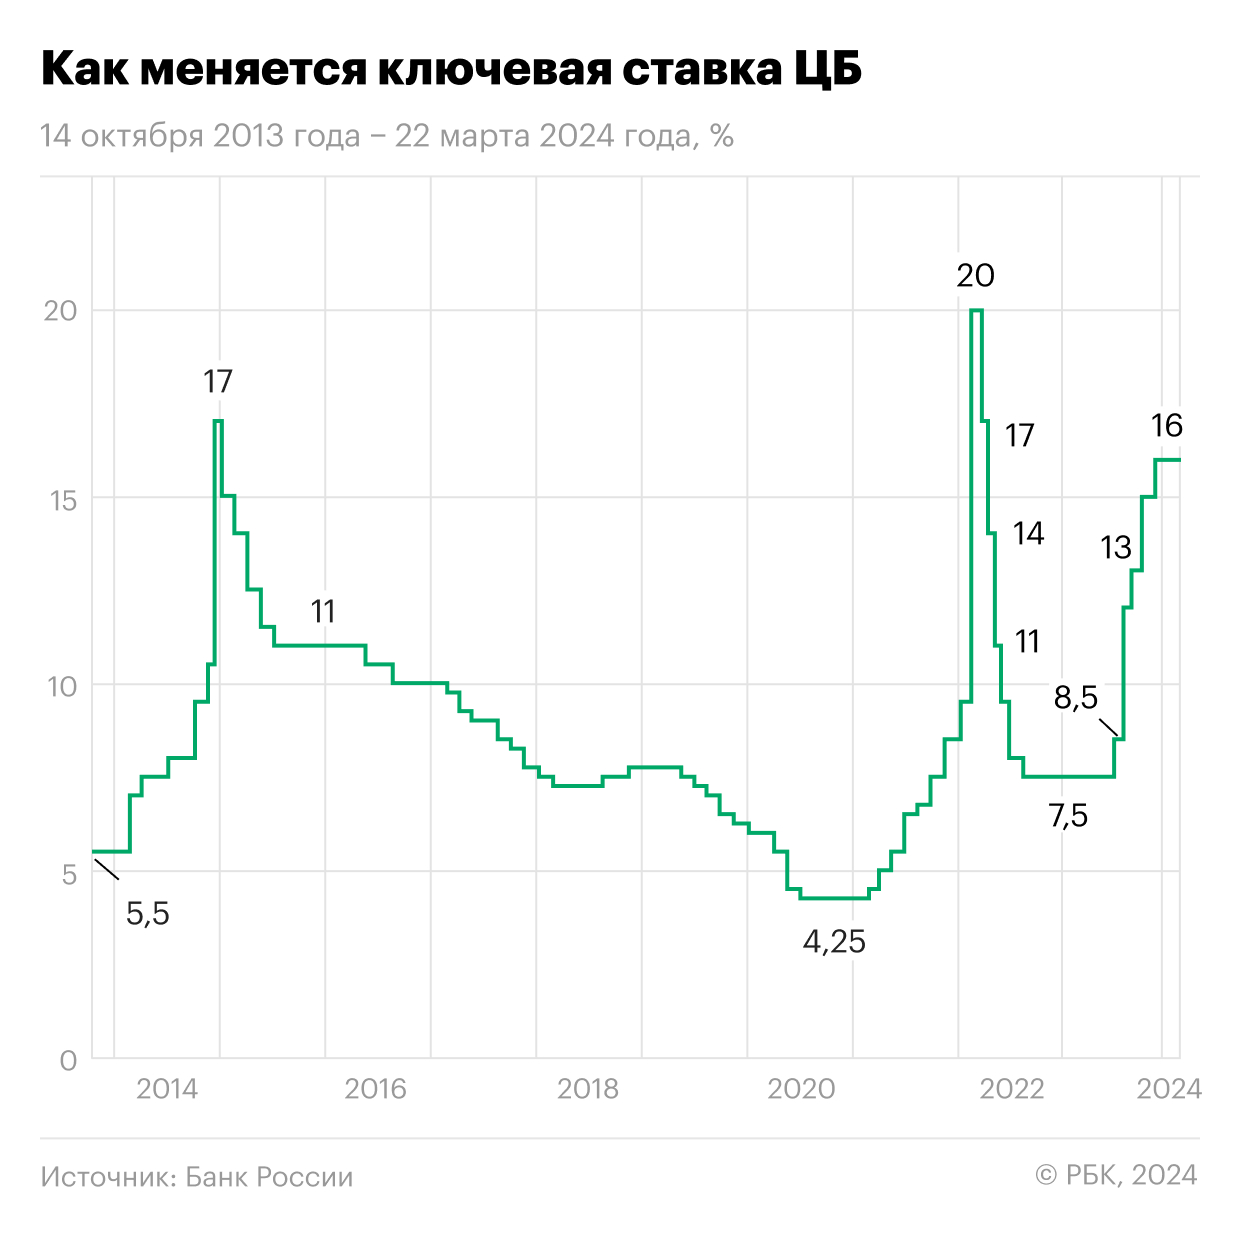 Изменение ключевой ставки ЦБ России с 2014 года